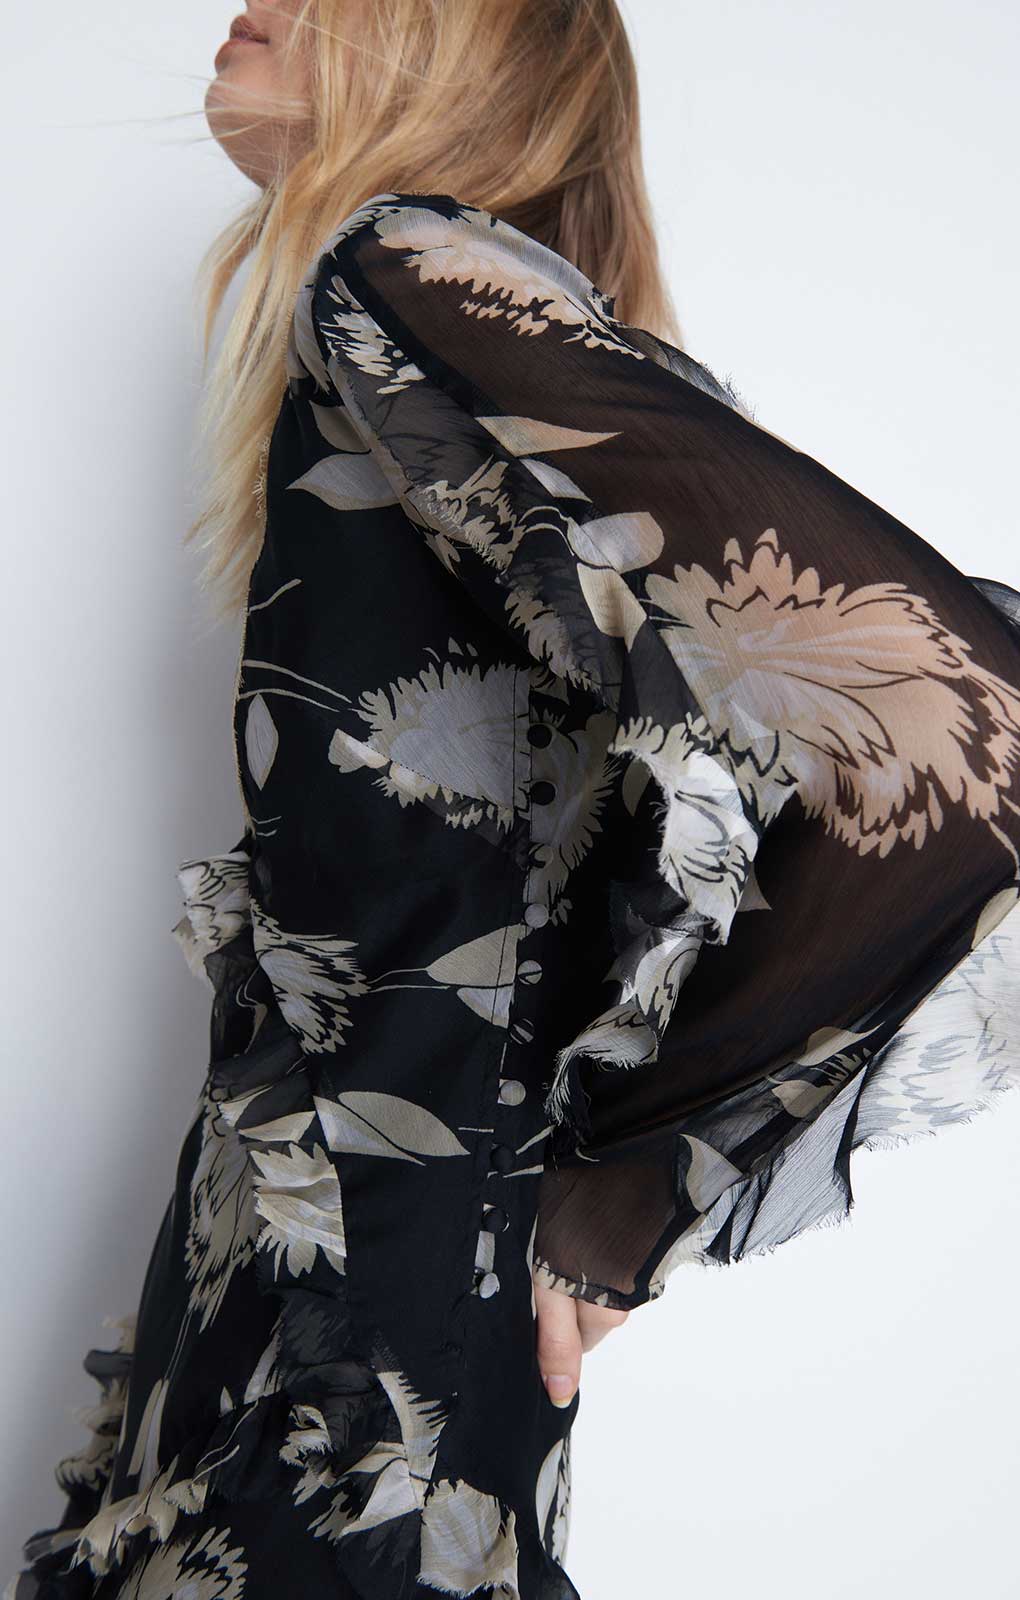 Warehouse Black Chiffon Lace Maxi Dress product image